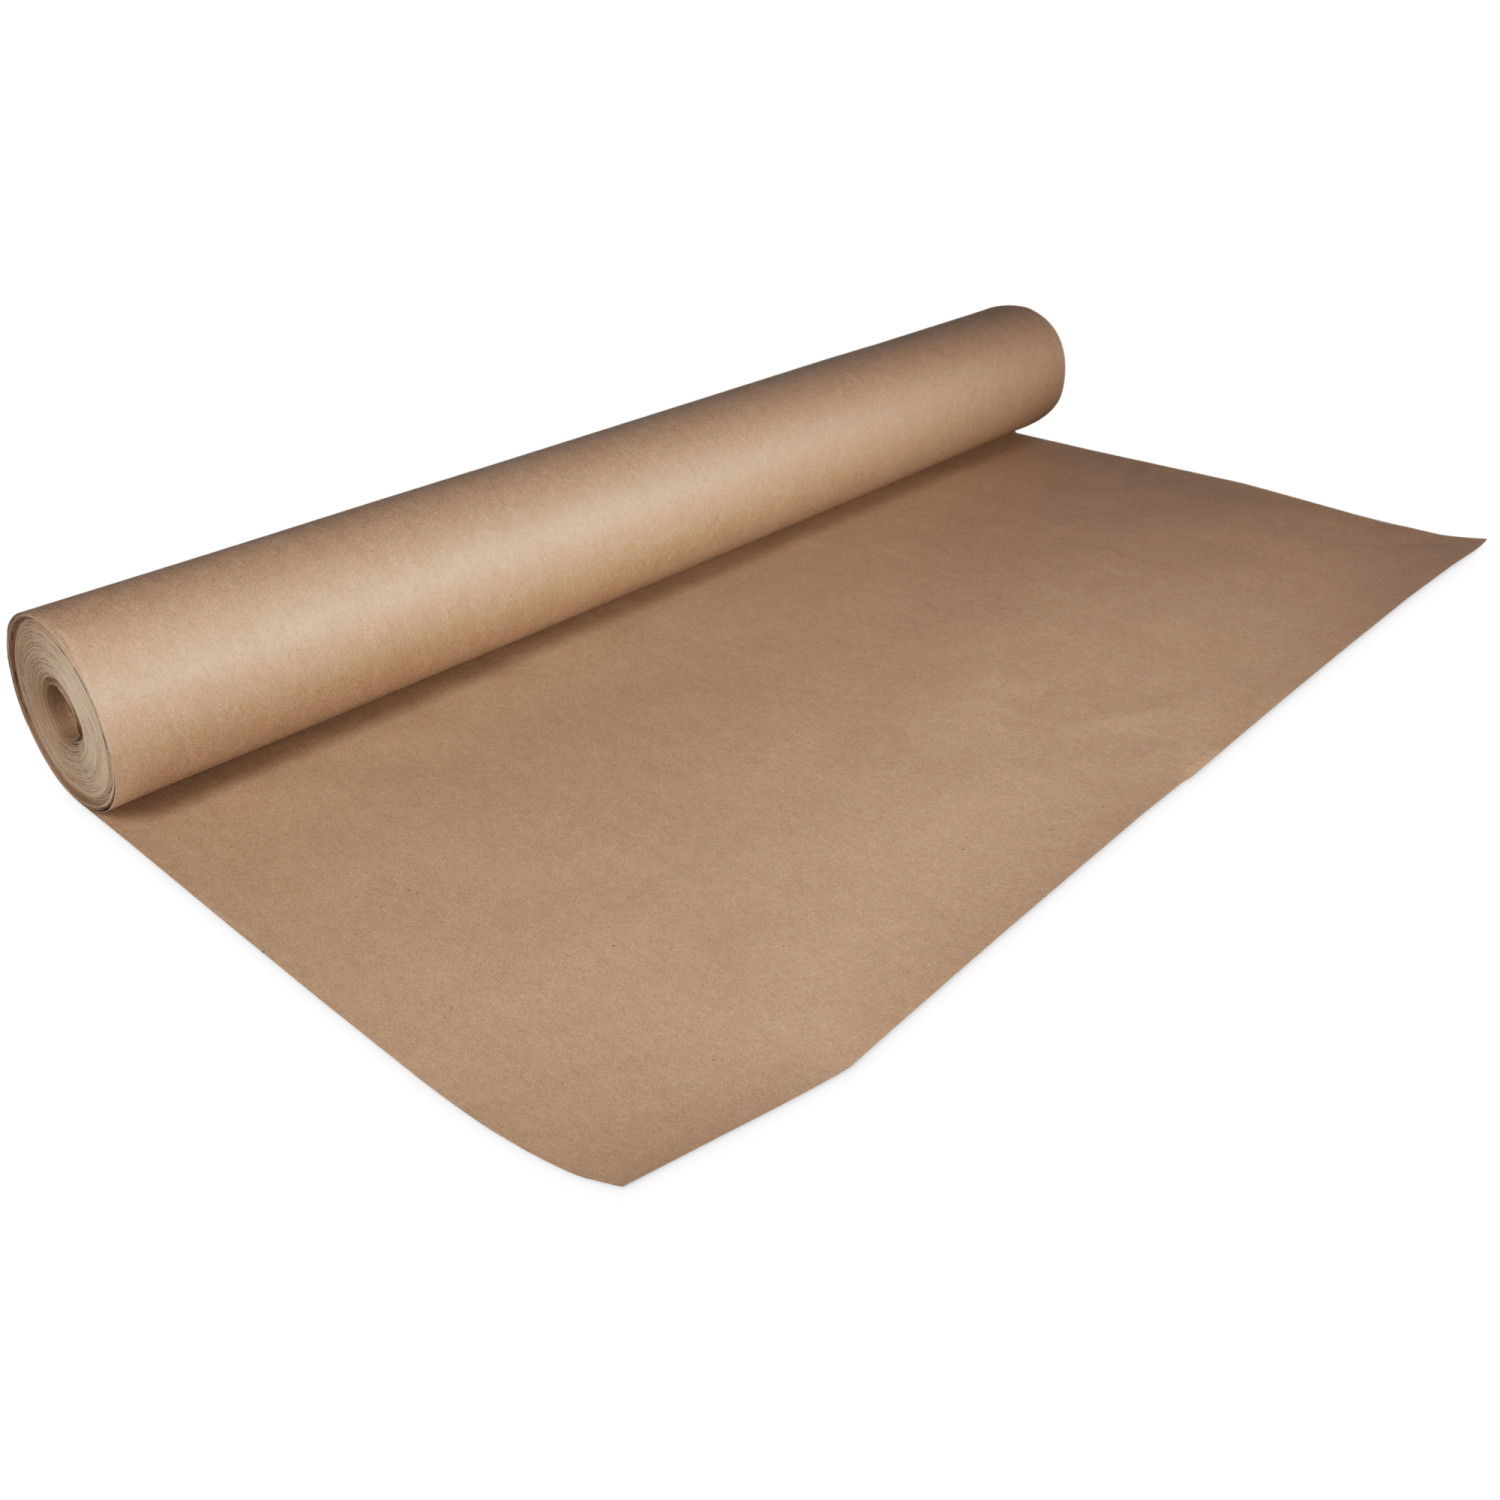 Plasticover PCBR360200 Rosin Paper, 36 x 200' (600 sq. ft.), Brown